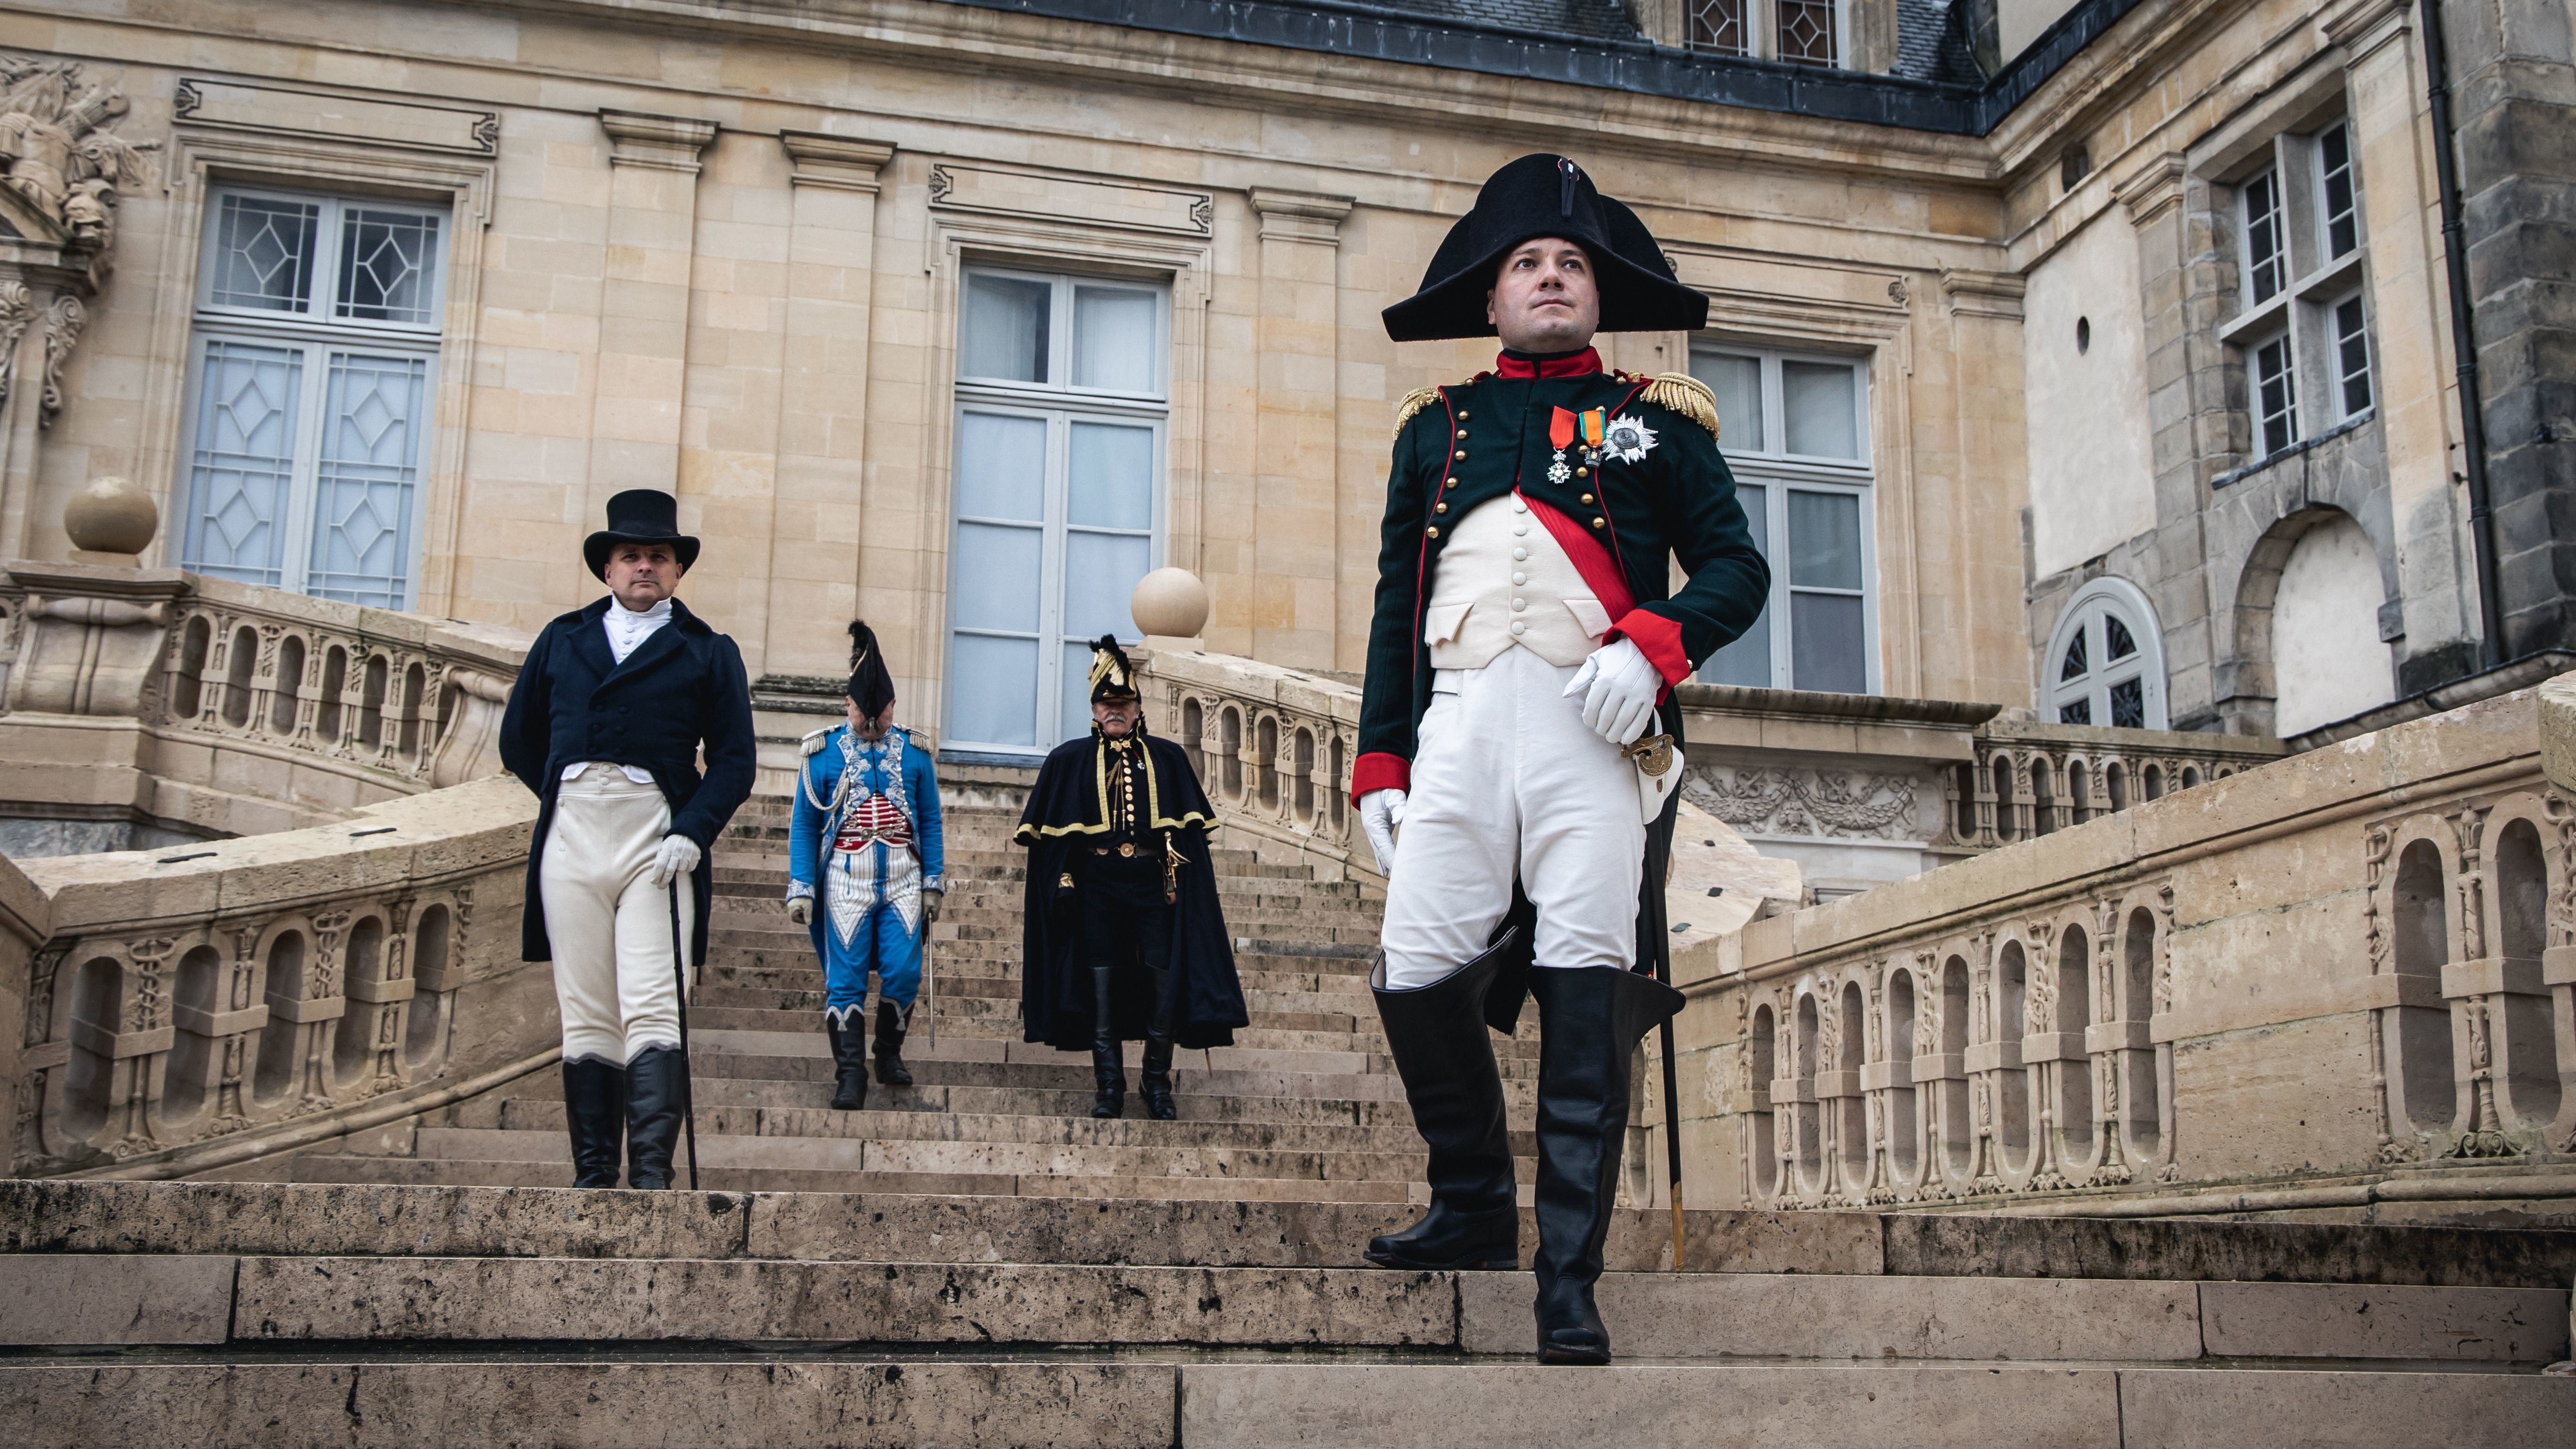 Ce week-end, le château de Fontainebleau accueille 300 reconstitueurs et comédiens qui vont rejouer la scène des « Adieux de Napoléon Ier » à ses soldats. Barry's photography